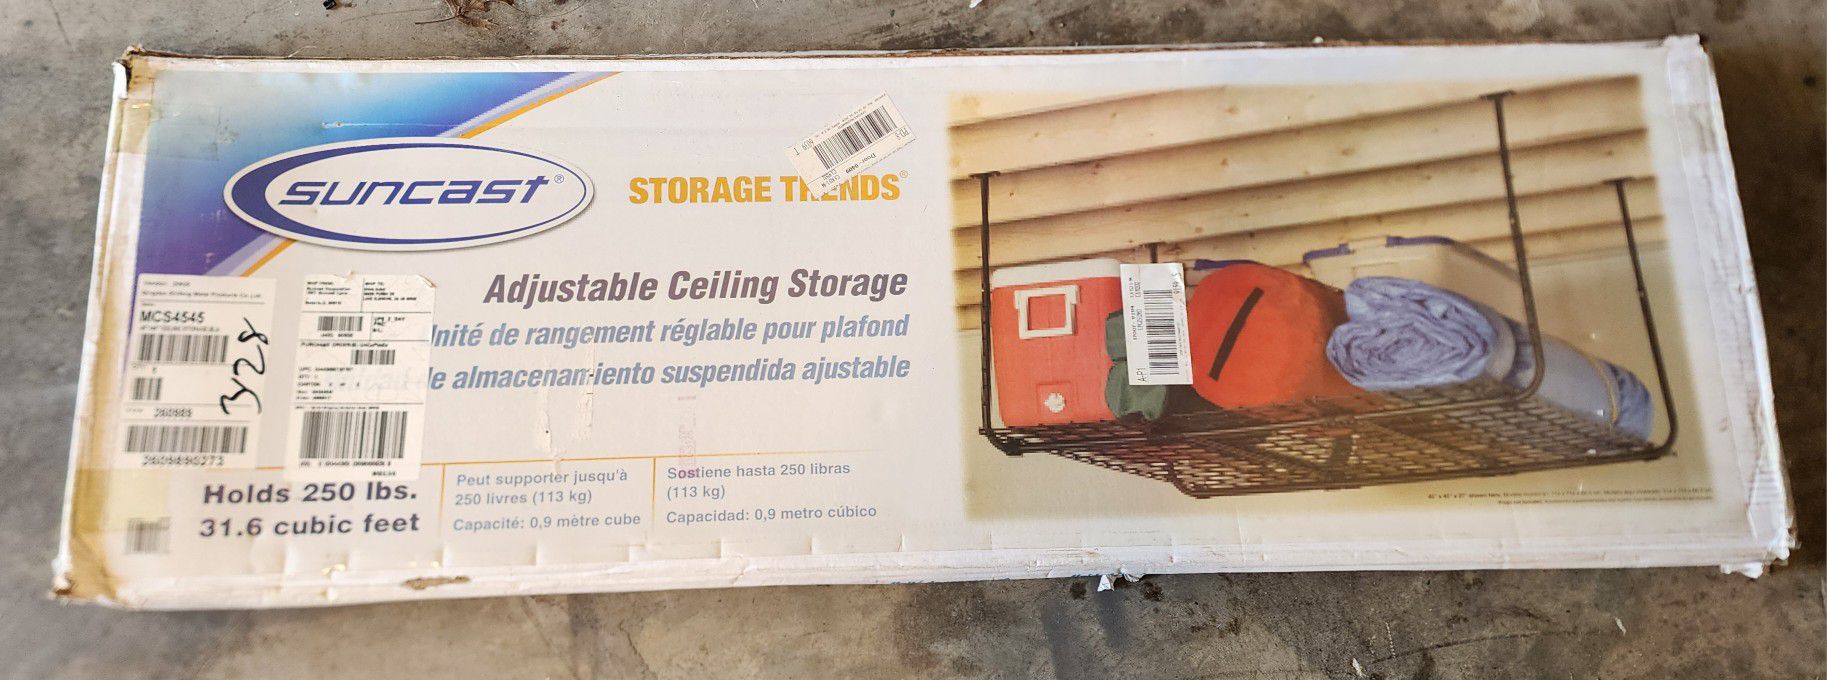 Hanging Storage for Garage